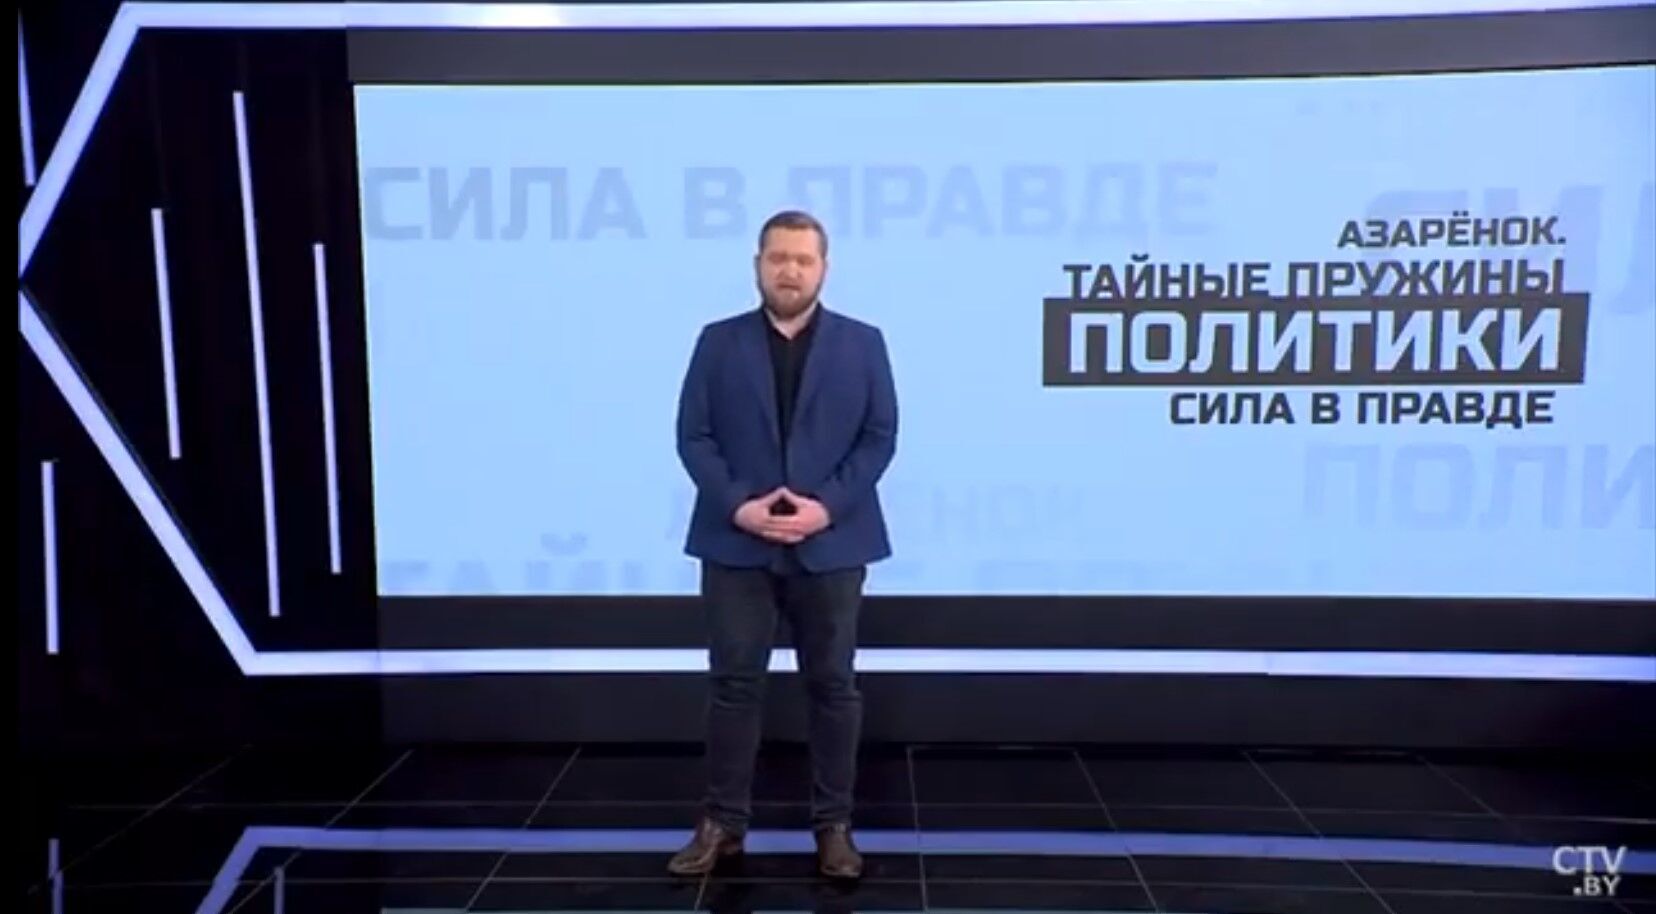 Білоруський пропагандист назвав прем'єра Польщі "сволотою" та пригрозив "Іскандерами". Відео